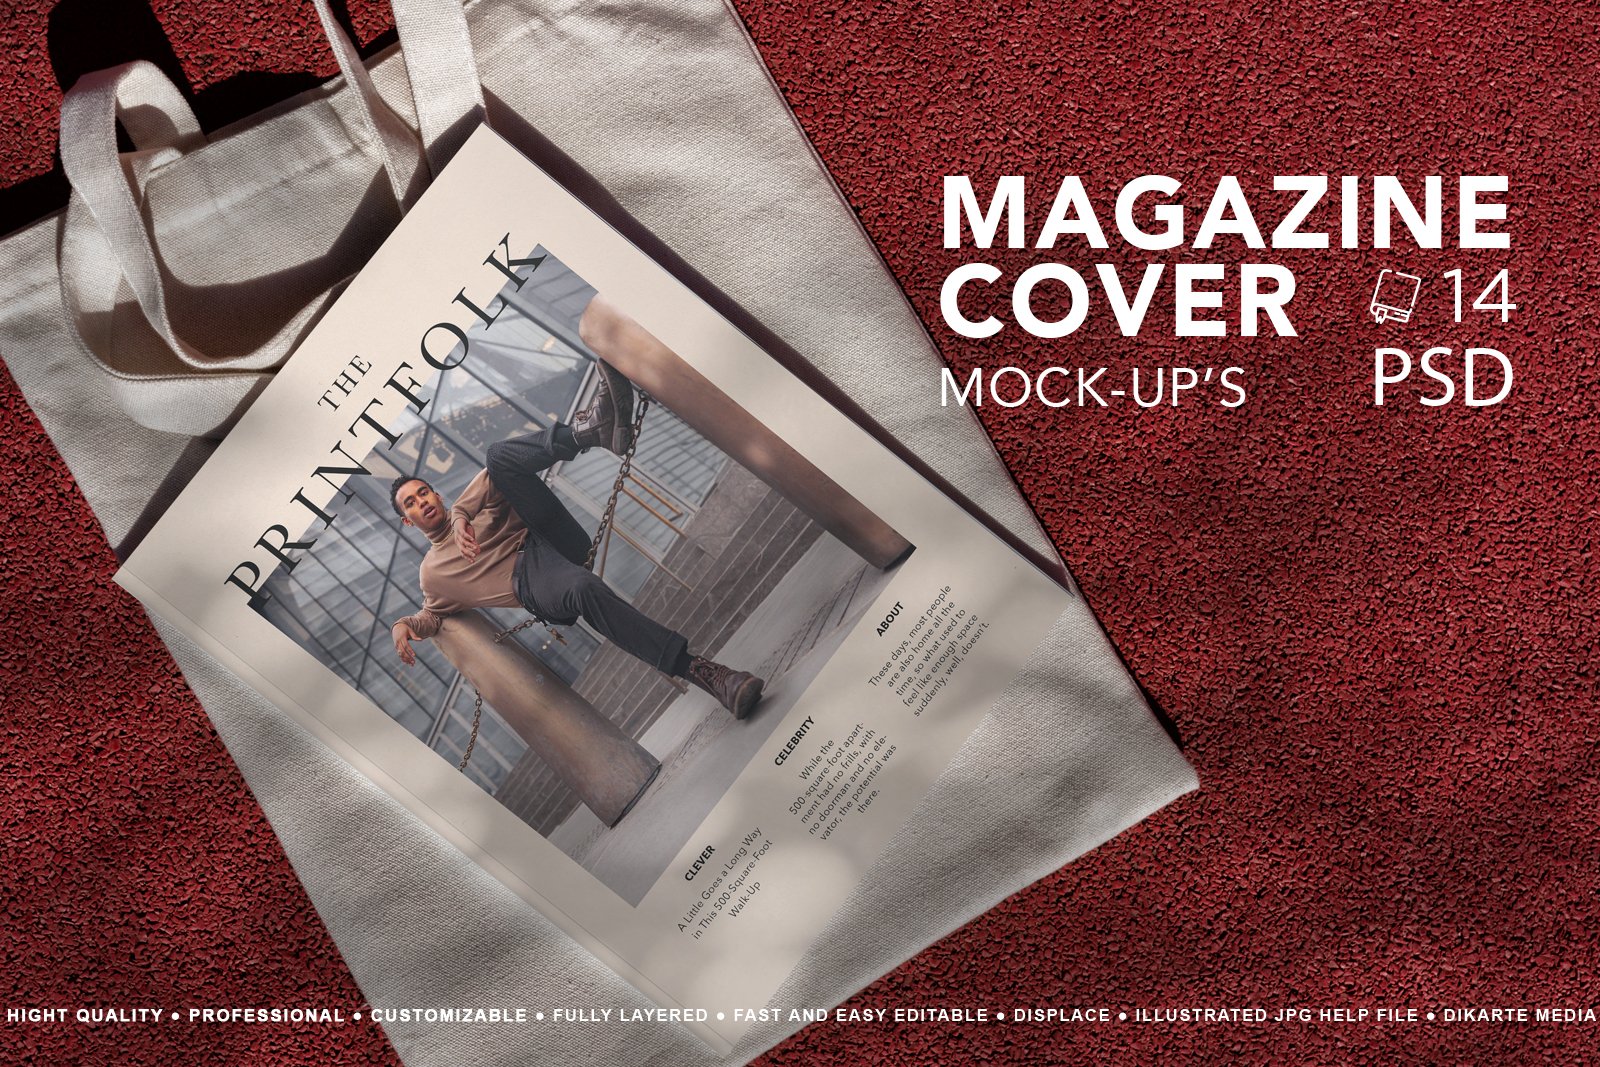 14款街头时尚画册书籍杂志封面PS贴图样机 Magazine Cover Mockup设计素材模板